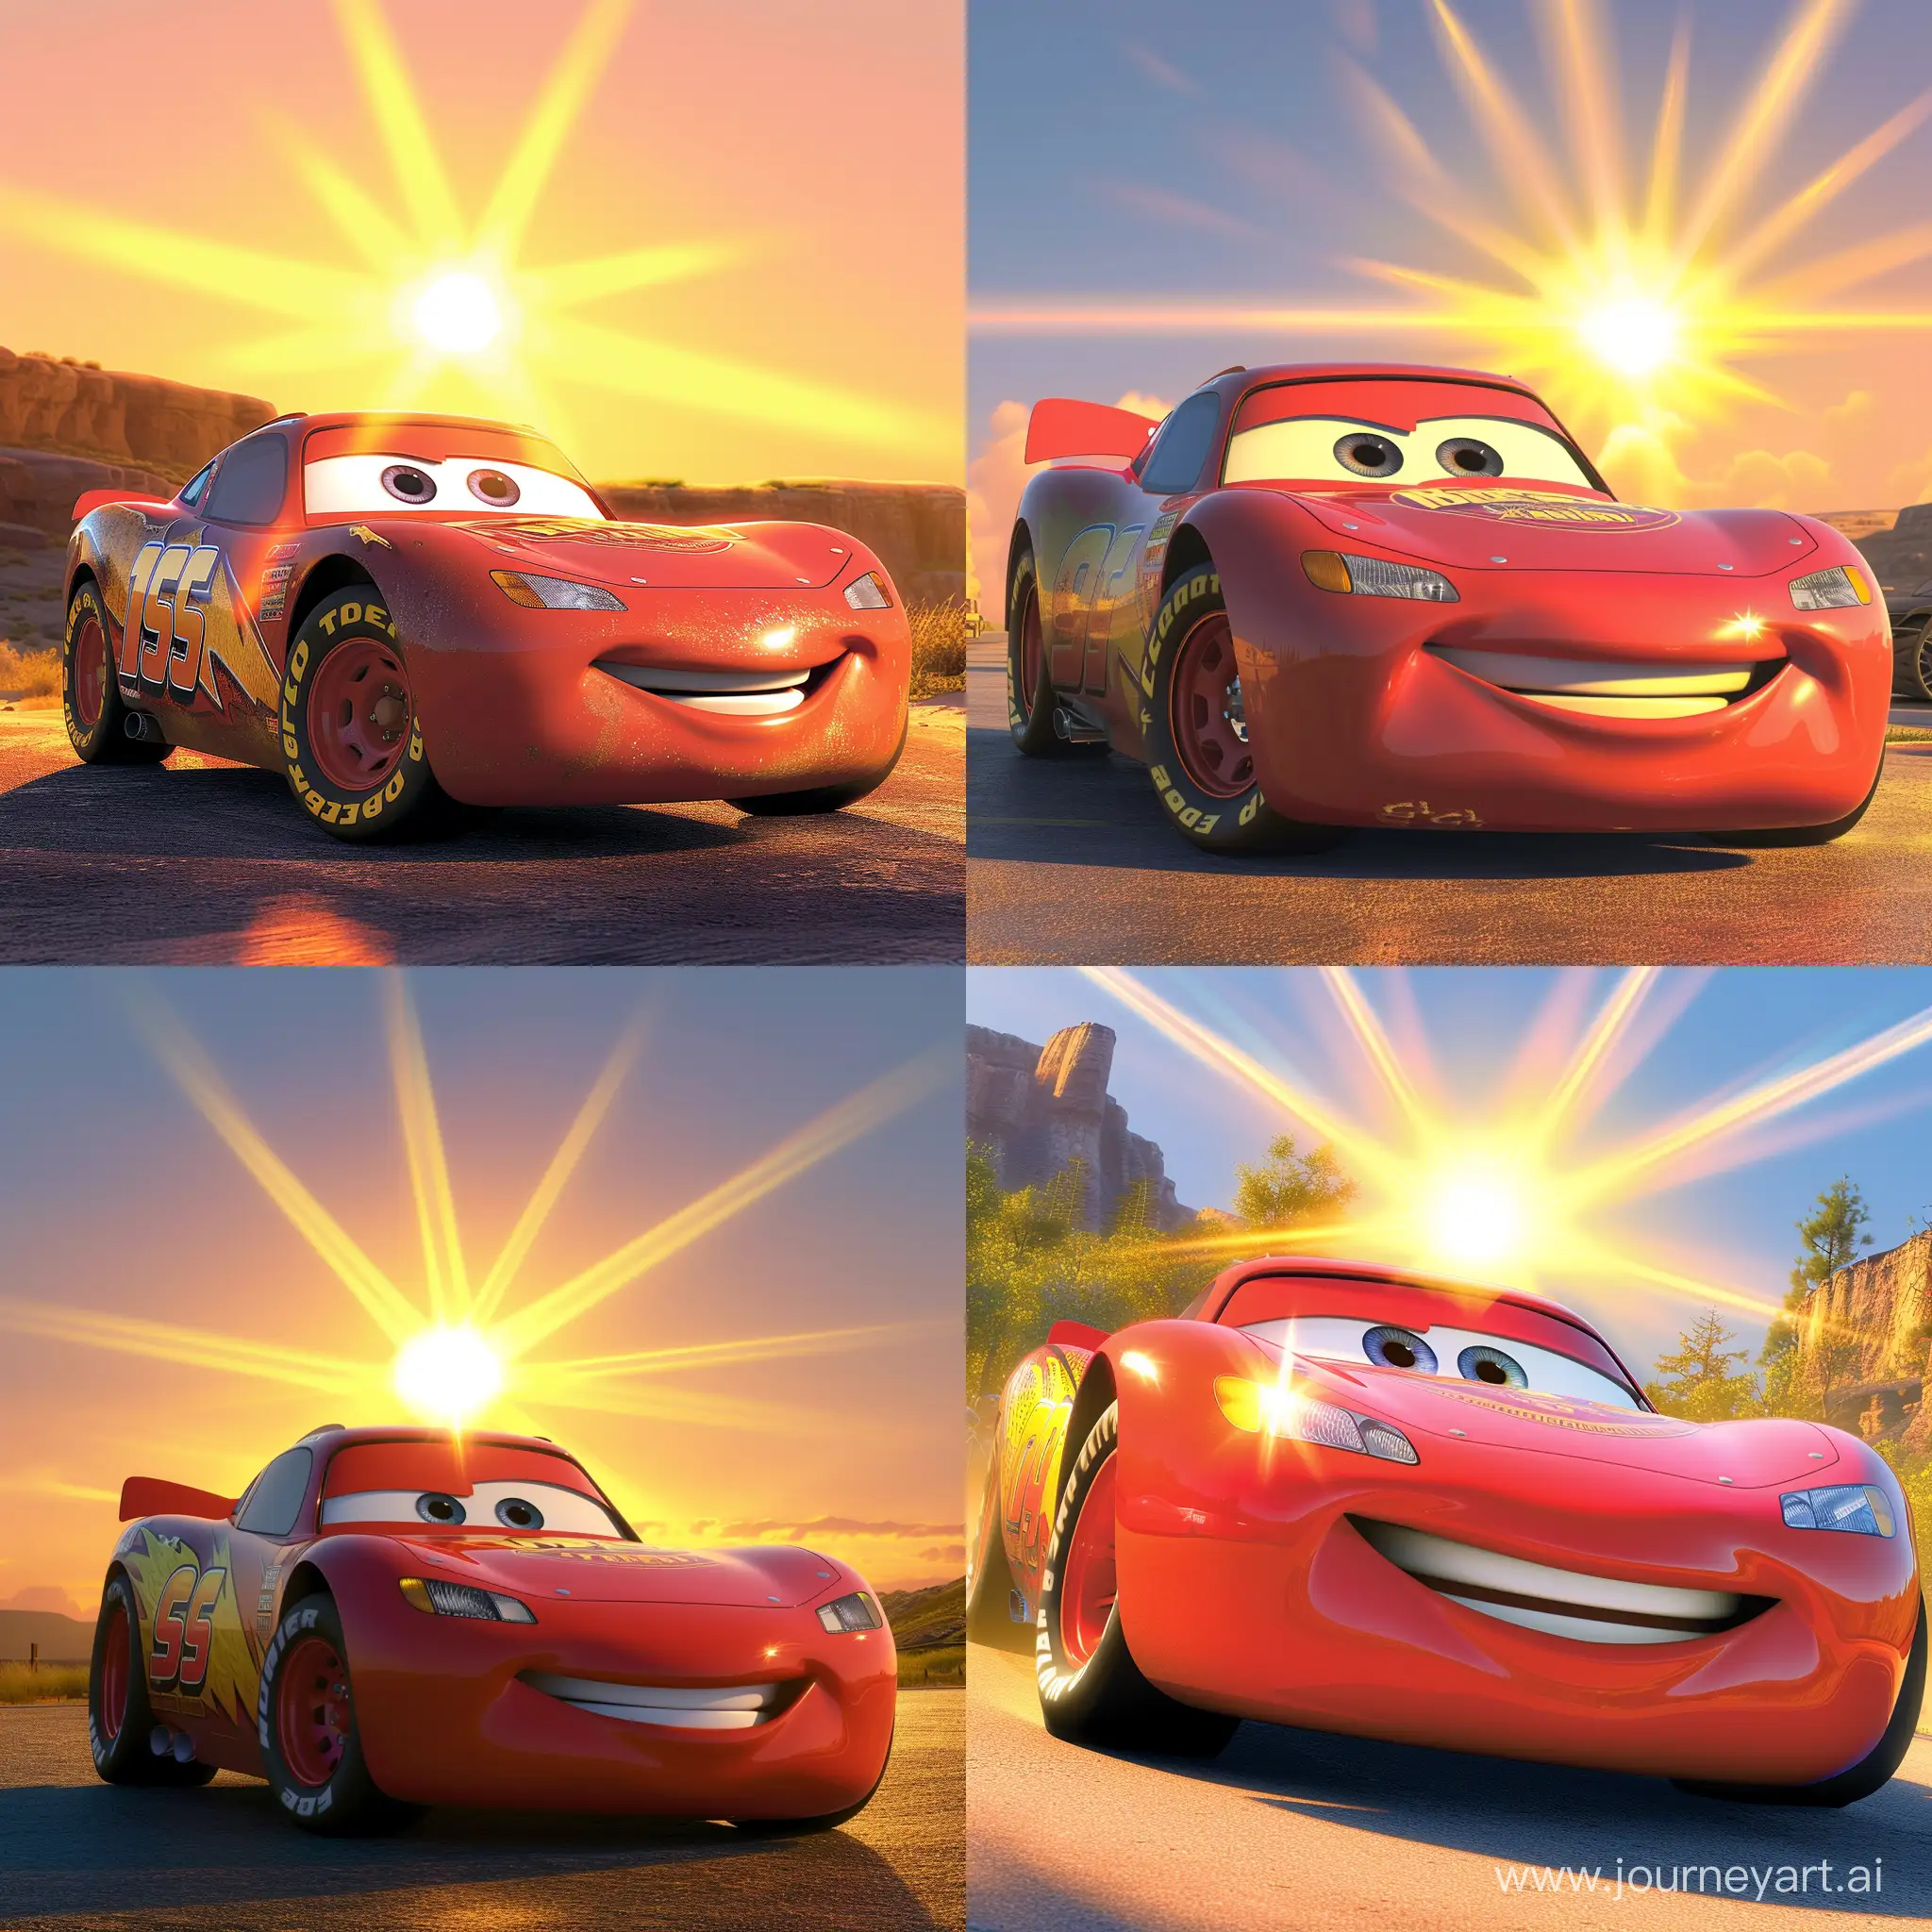 Lighting McQueen стал самой быстрой машиной, он весь сияет от лучей солнца и все хотят стать таким-же быстрым как и он